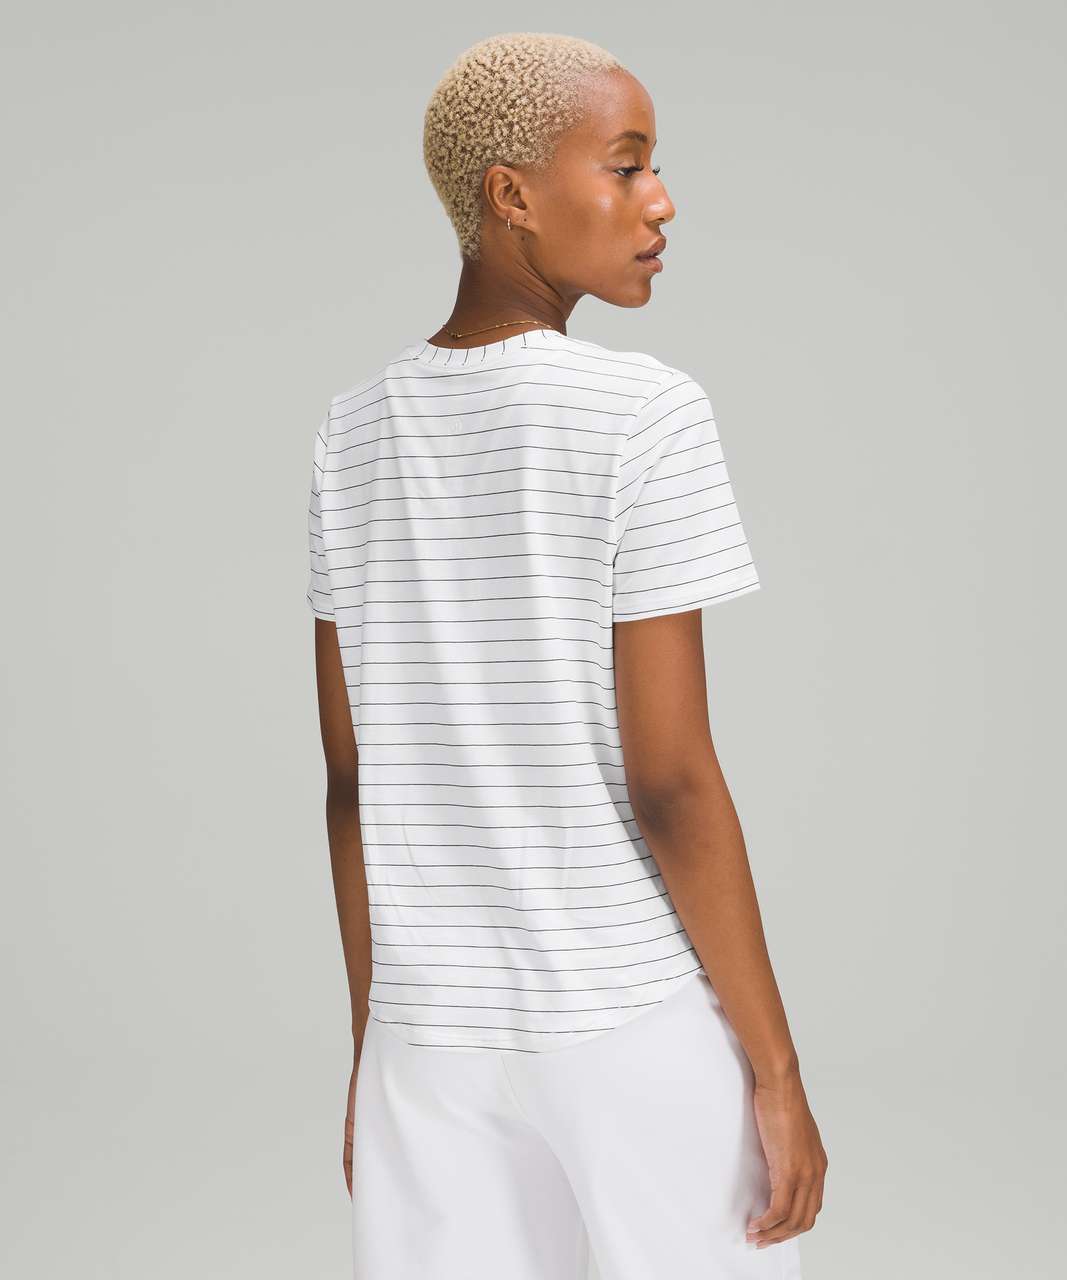 Lululemon Love Crew Short Sleeve T-Shirt - Short Serve Stripe White Black